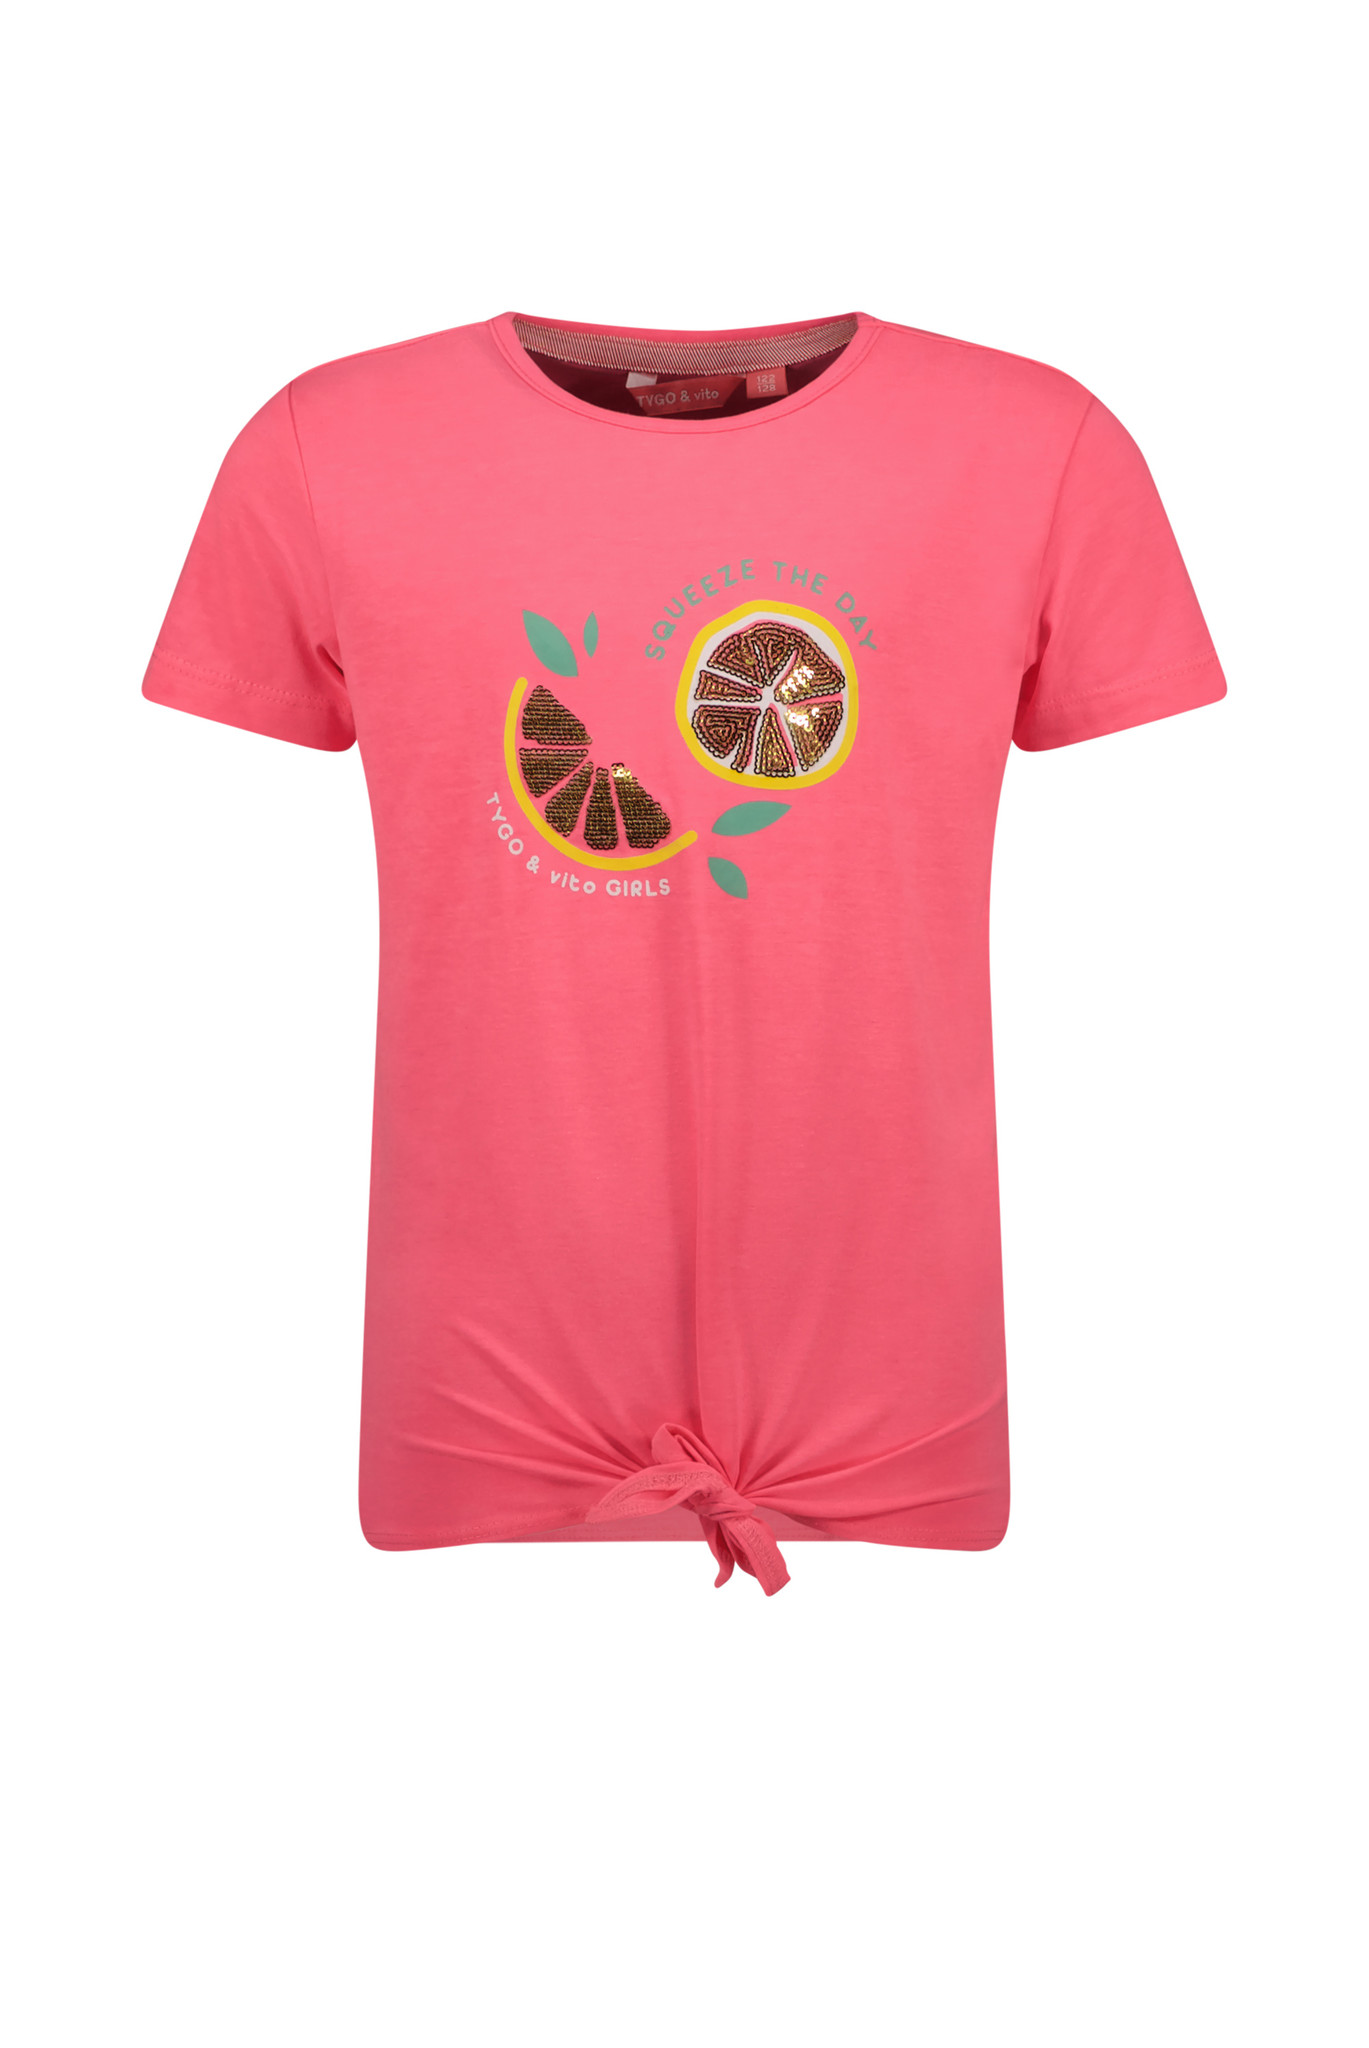 Tygo & Vito Meisjes t-shirt met knoop - Deep roze